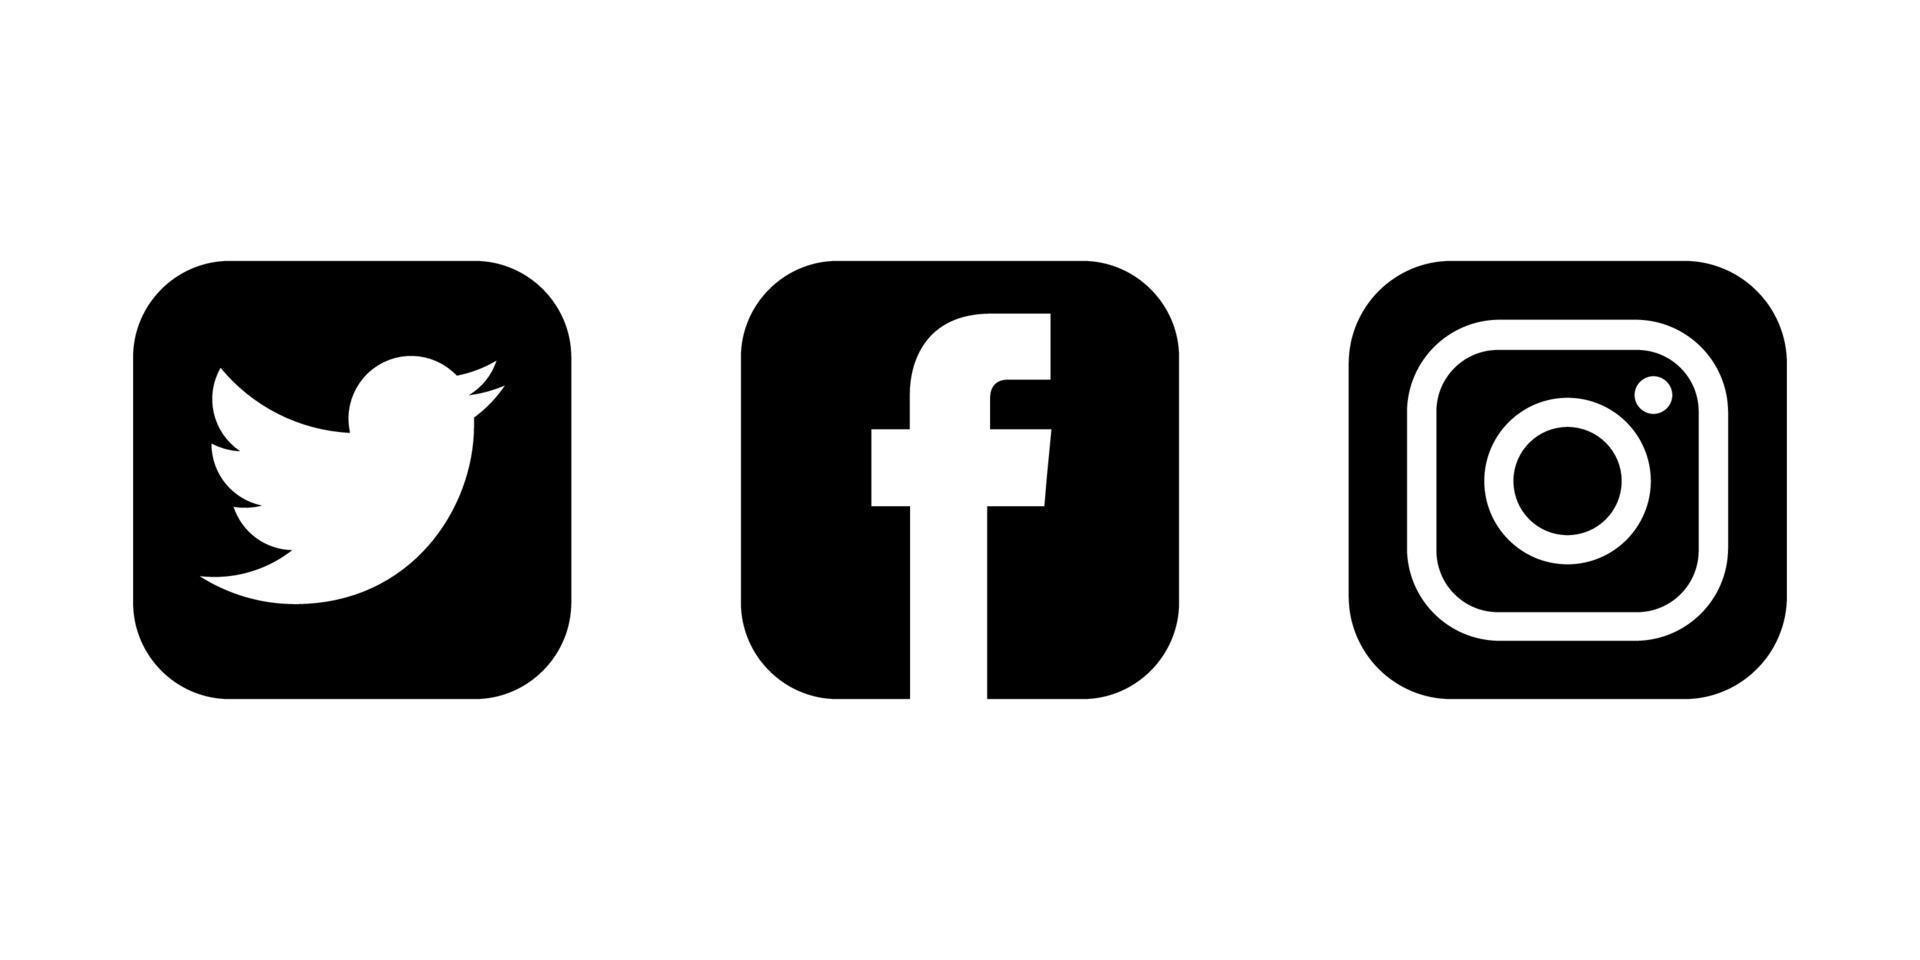 Social Media Icons Set. Facebook Instagram Twitter Logos vector